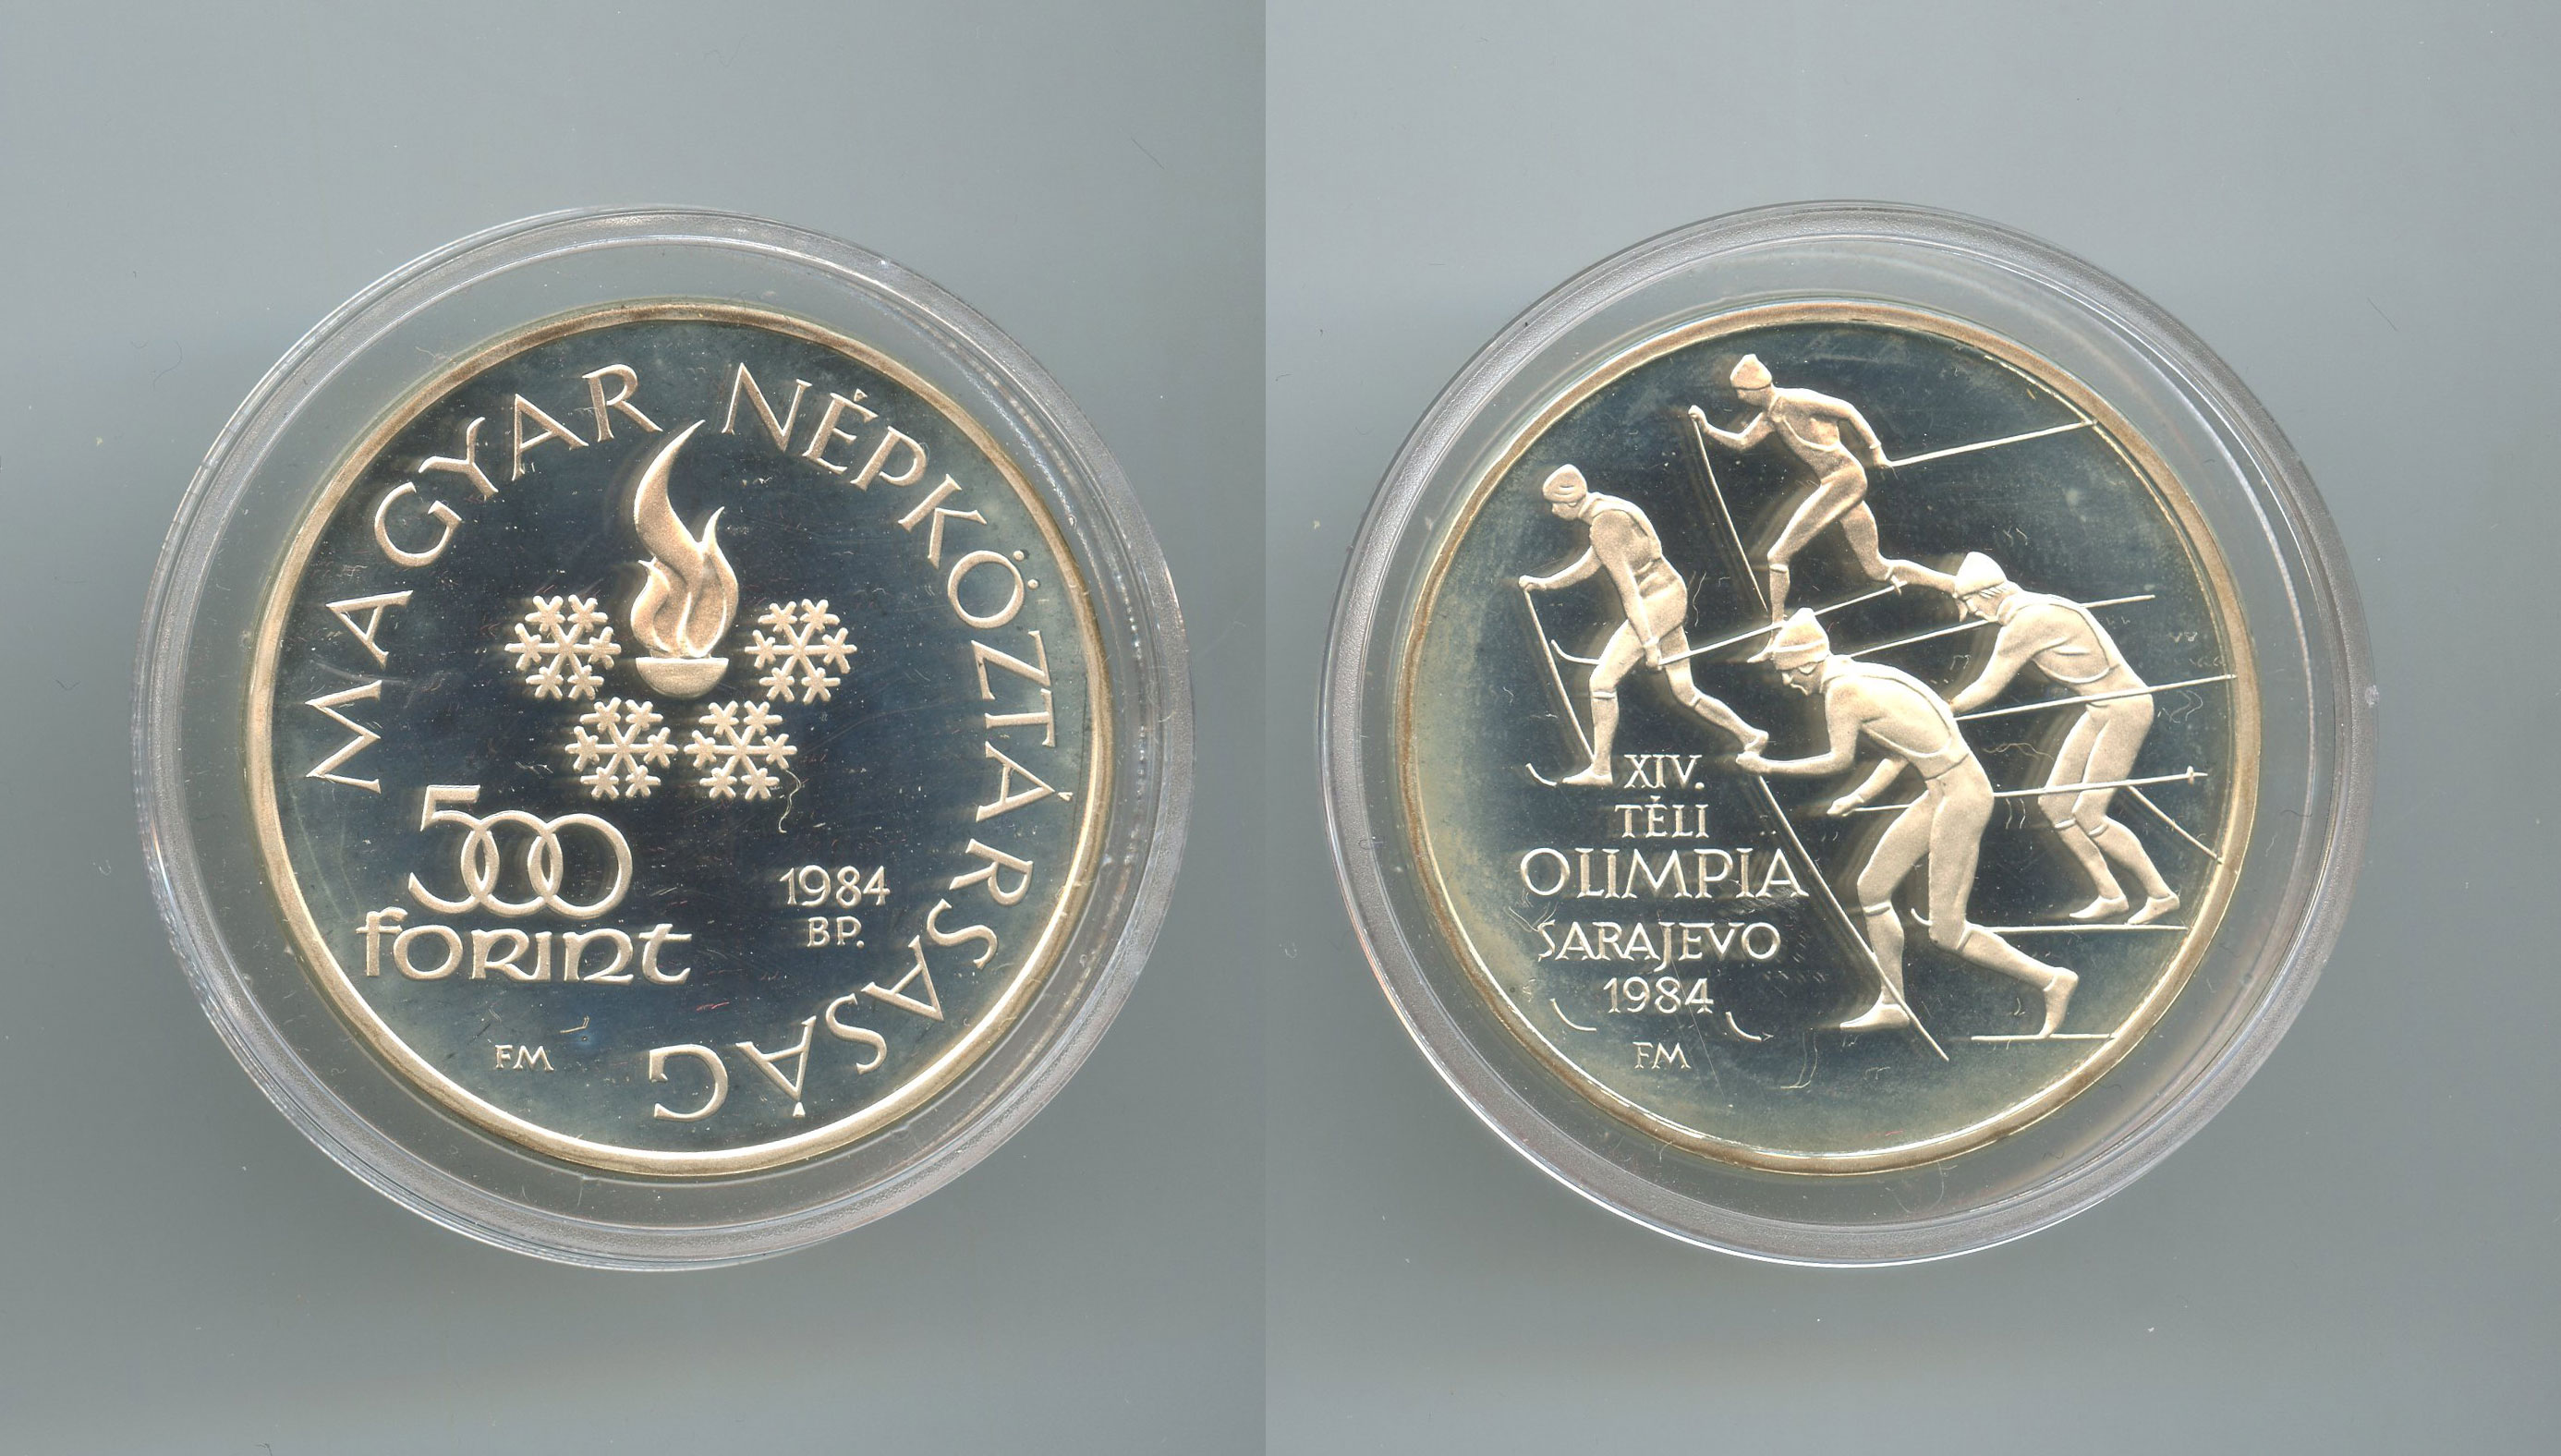 UNGHERIA, 500 Forint 1984 "Olimpiadi Los Angeles '84"